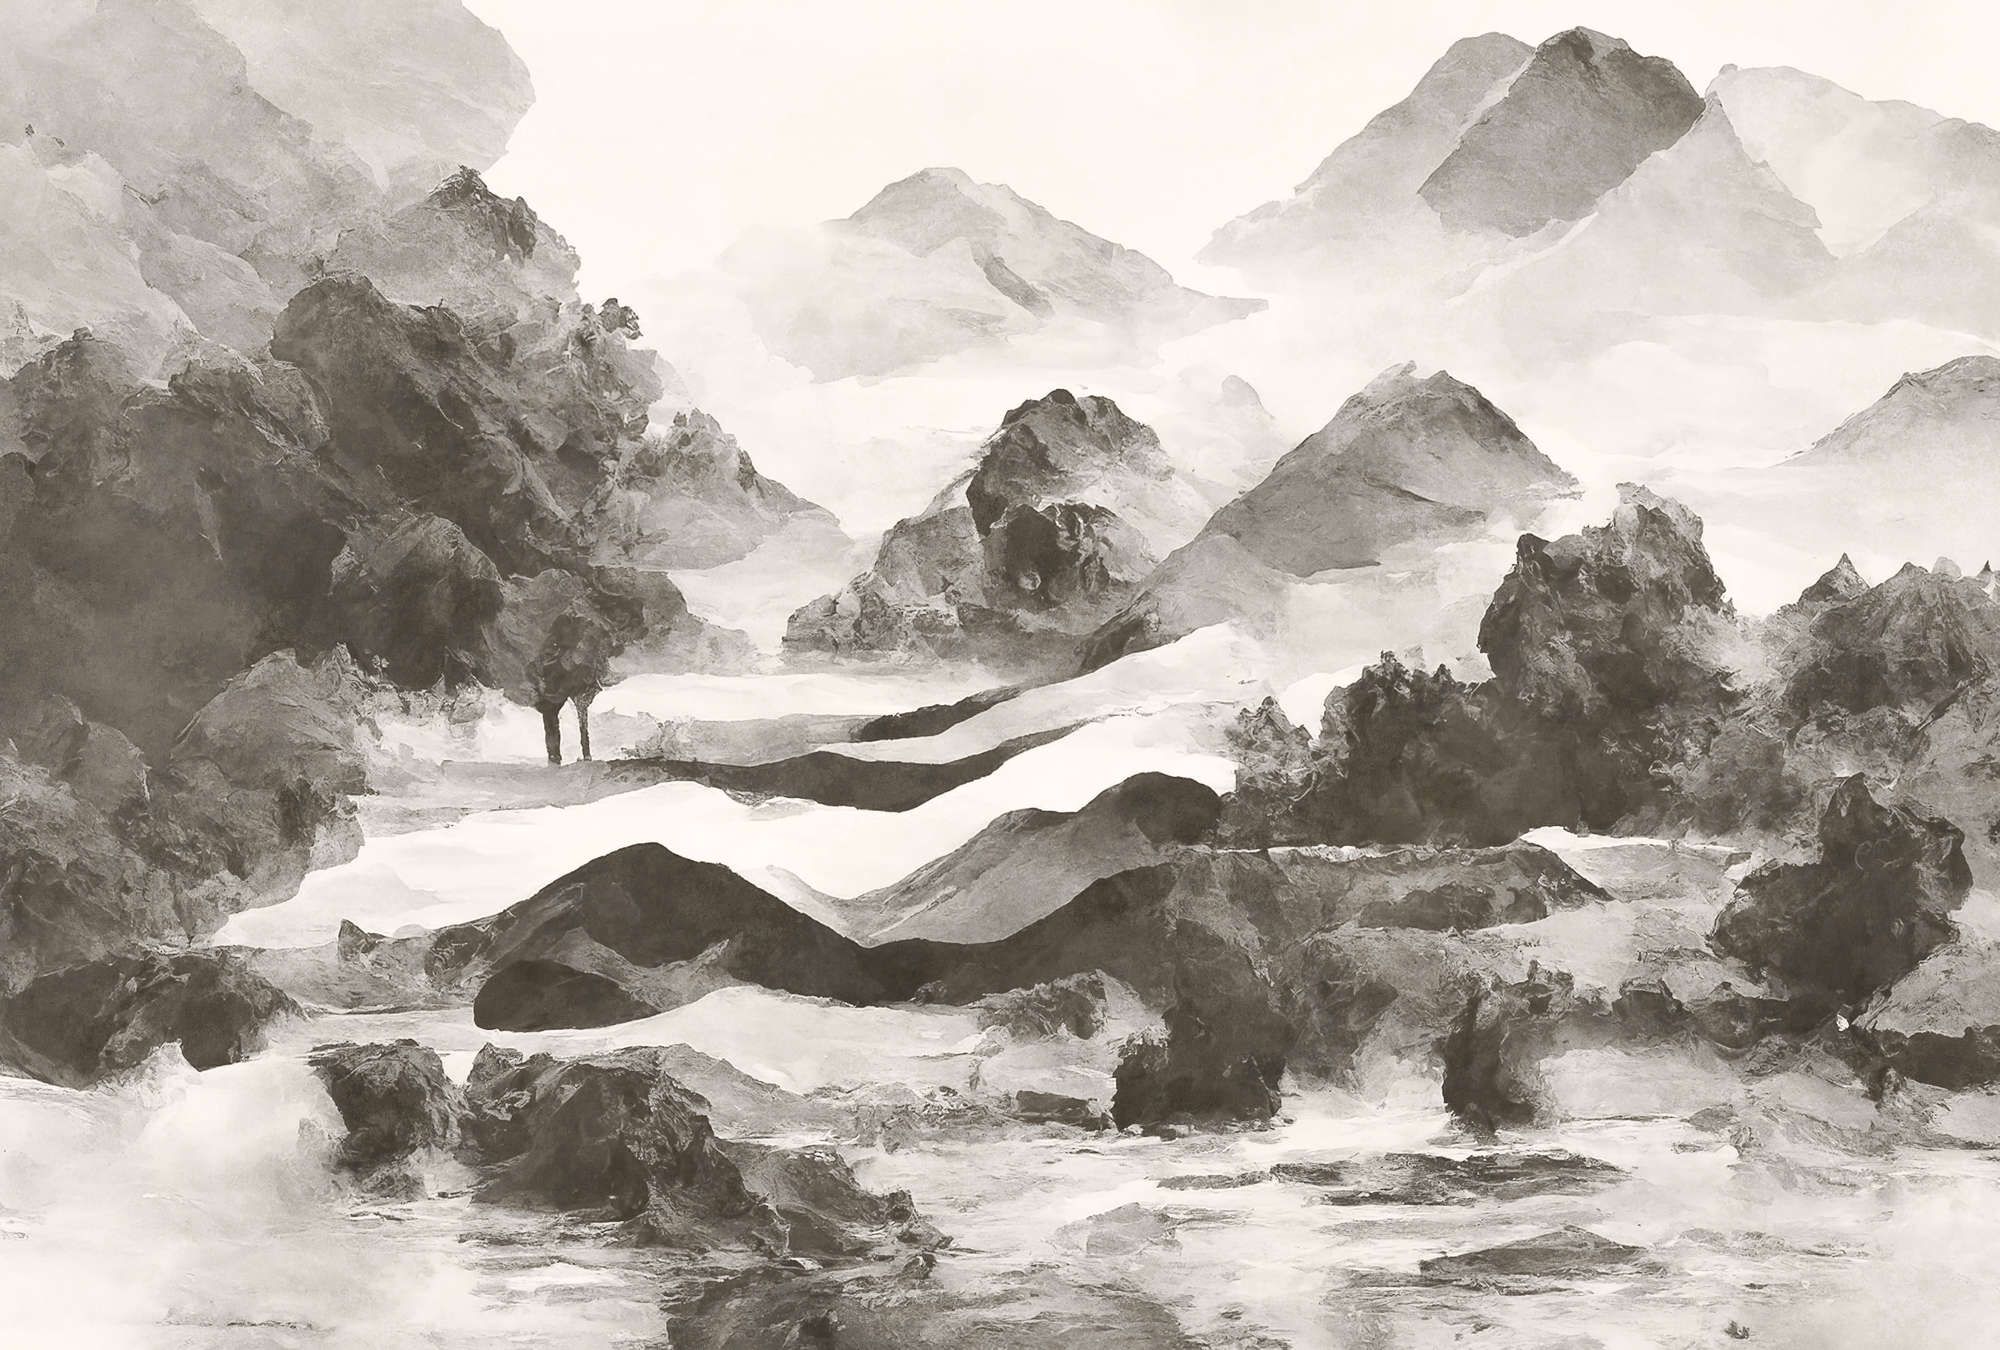             Digital behang »tinterra 1« - Landschap met bergen & mist - Grijs | Mat, Glad vlies
        